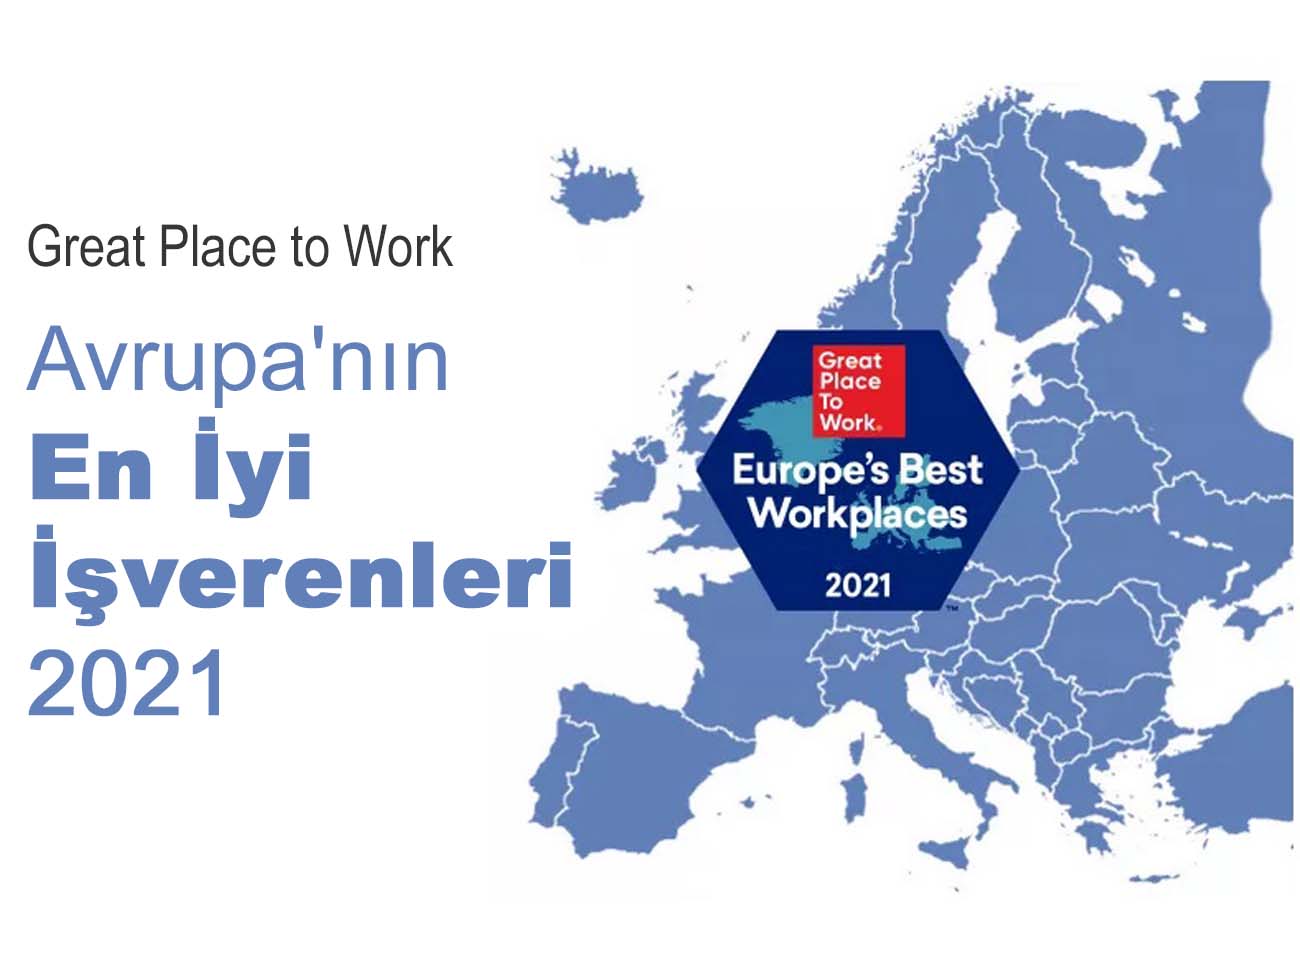 Avrupa’nın En İyi İşverenleri (2021)